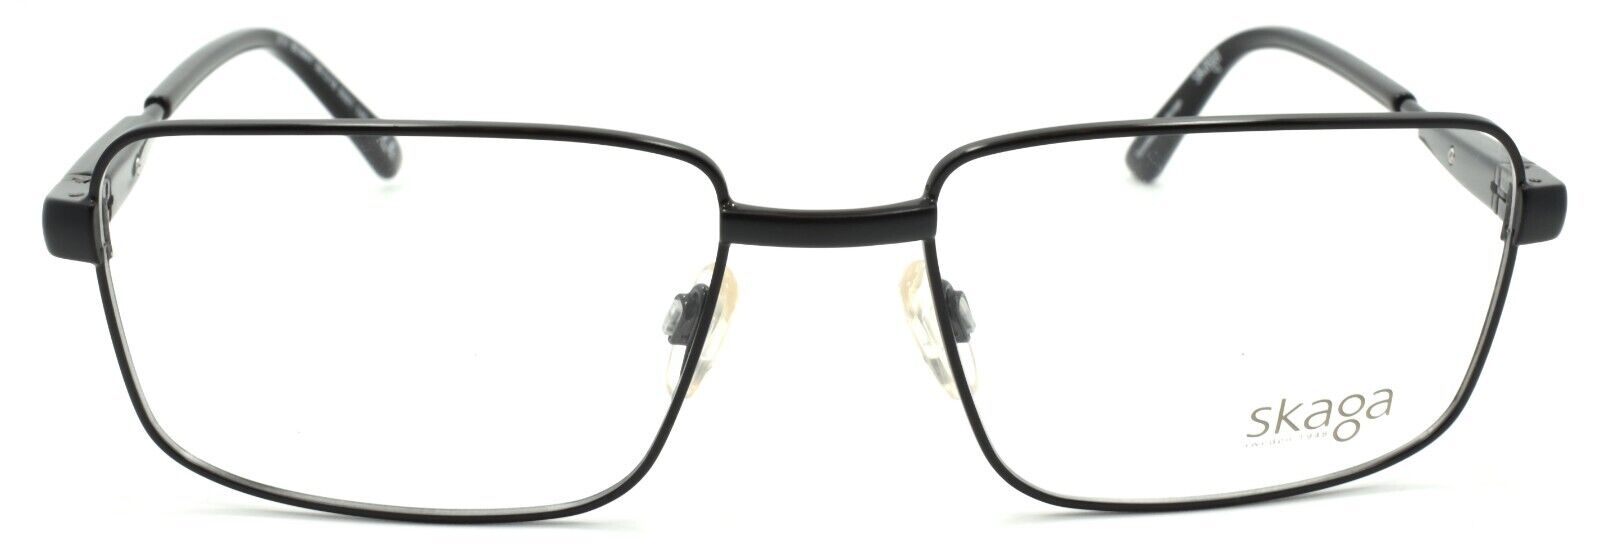 2-Skaga 3751 Benny 5501 Men's Eyeglasses Frames 56-18-145 Black-IKSpecs